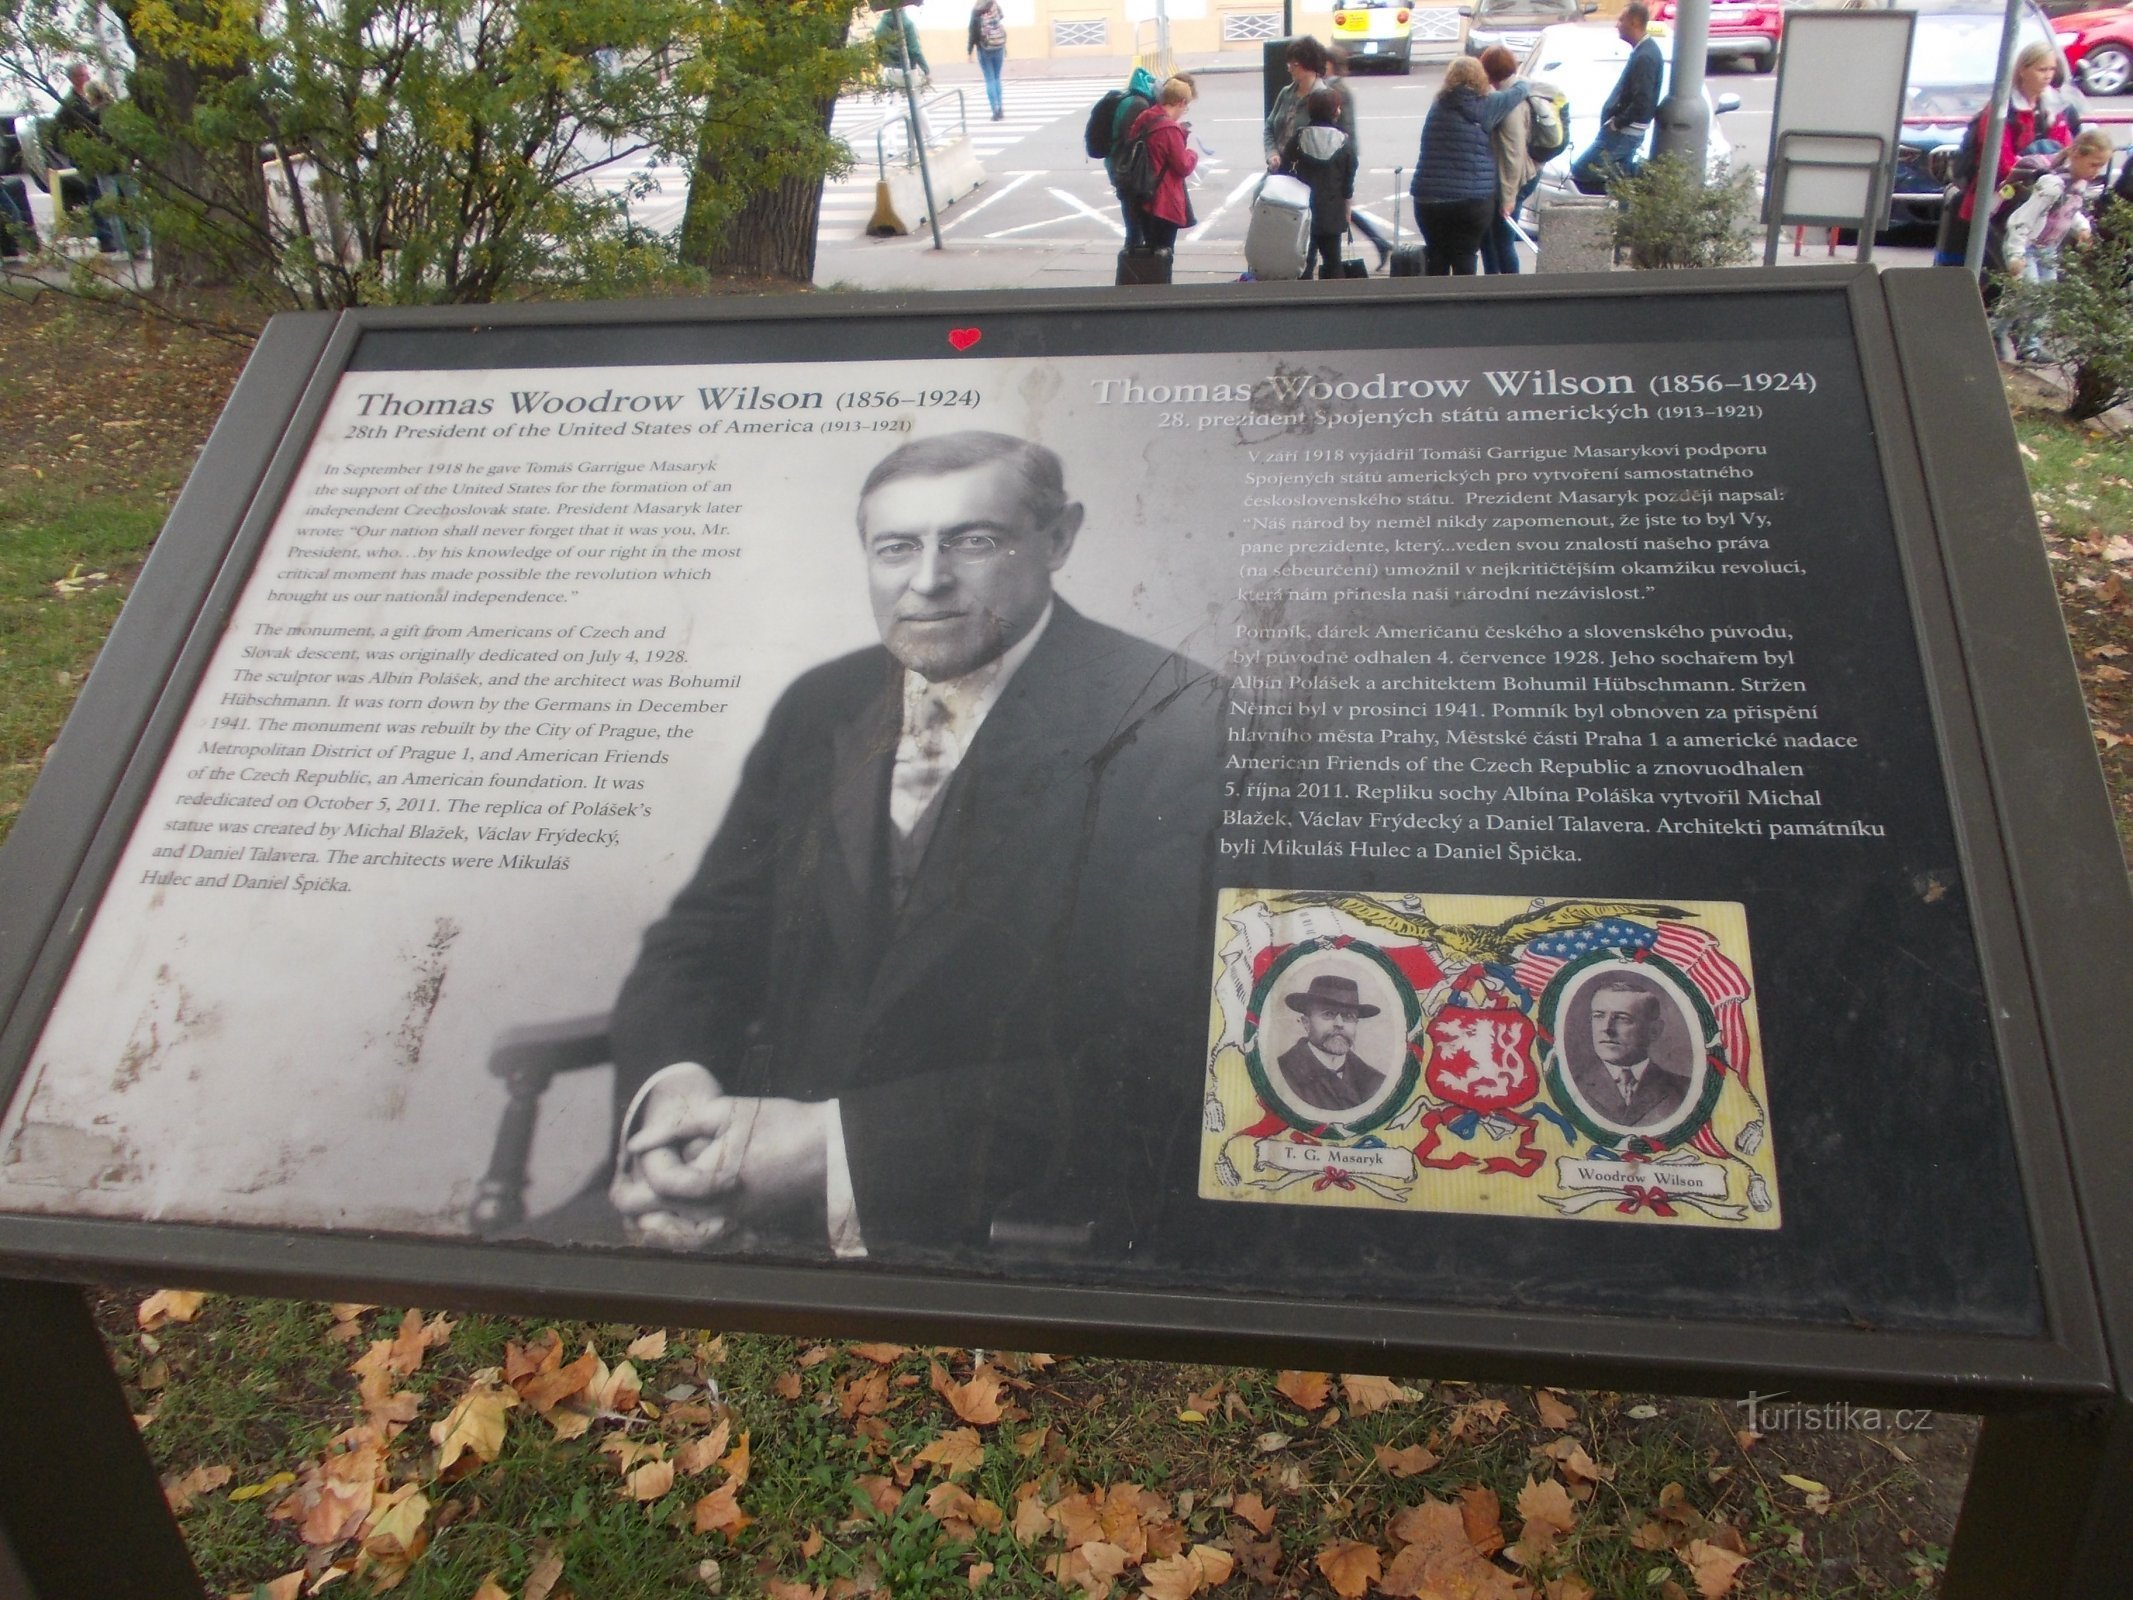 panneau d'information au monument